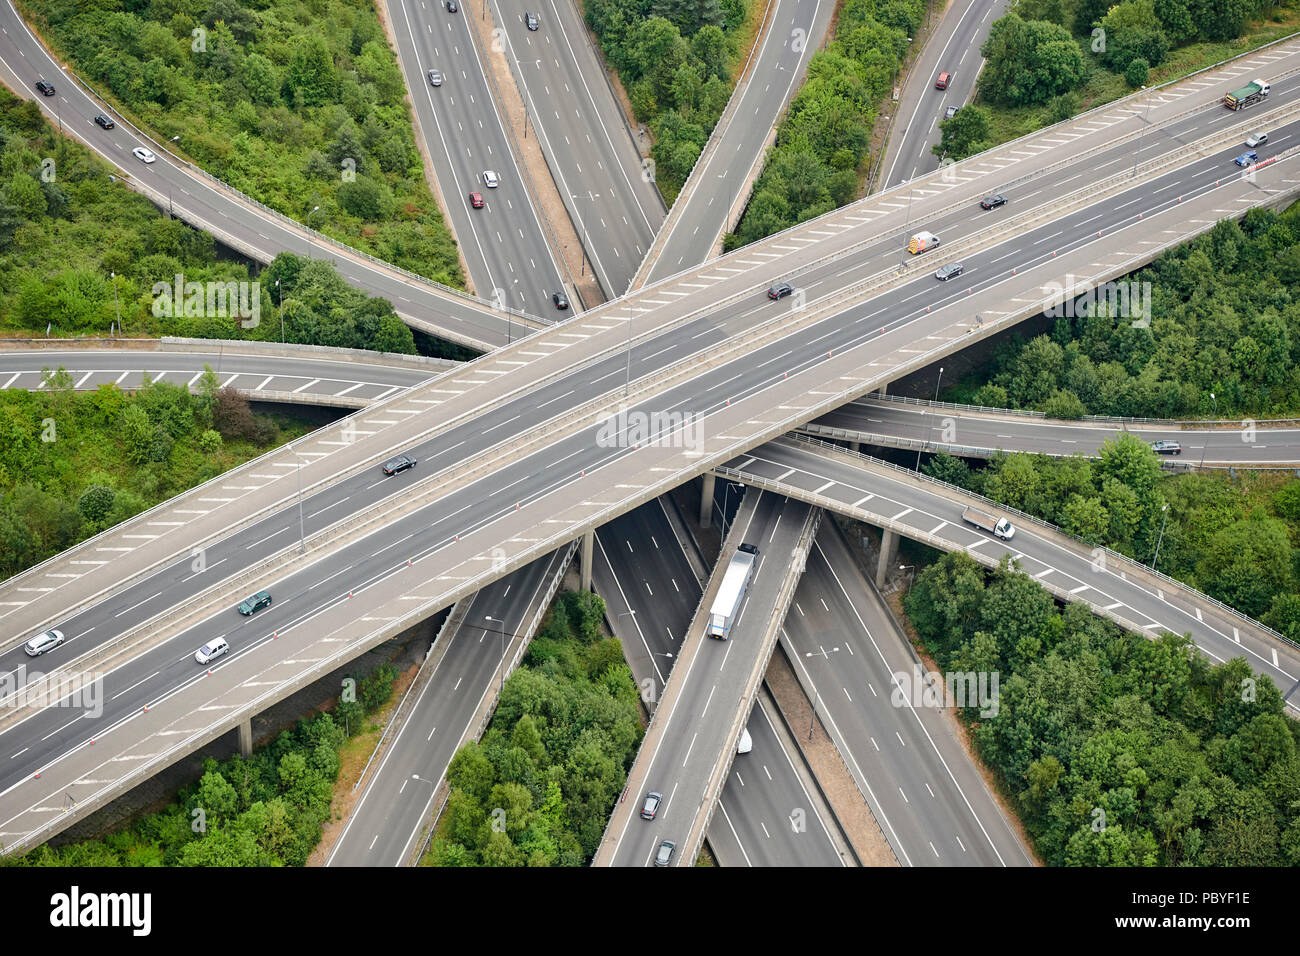 Un' antenna vista aerea del M23/M25 incrocio autostradale, sud-est dell' Inghilterra, Regno Unito Foto Stock